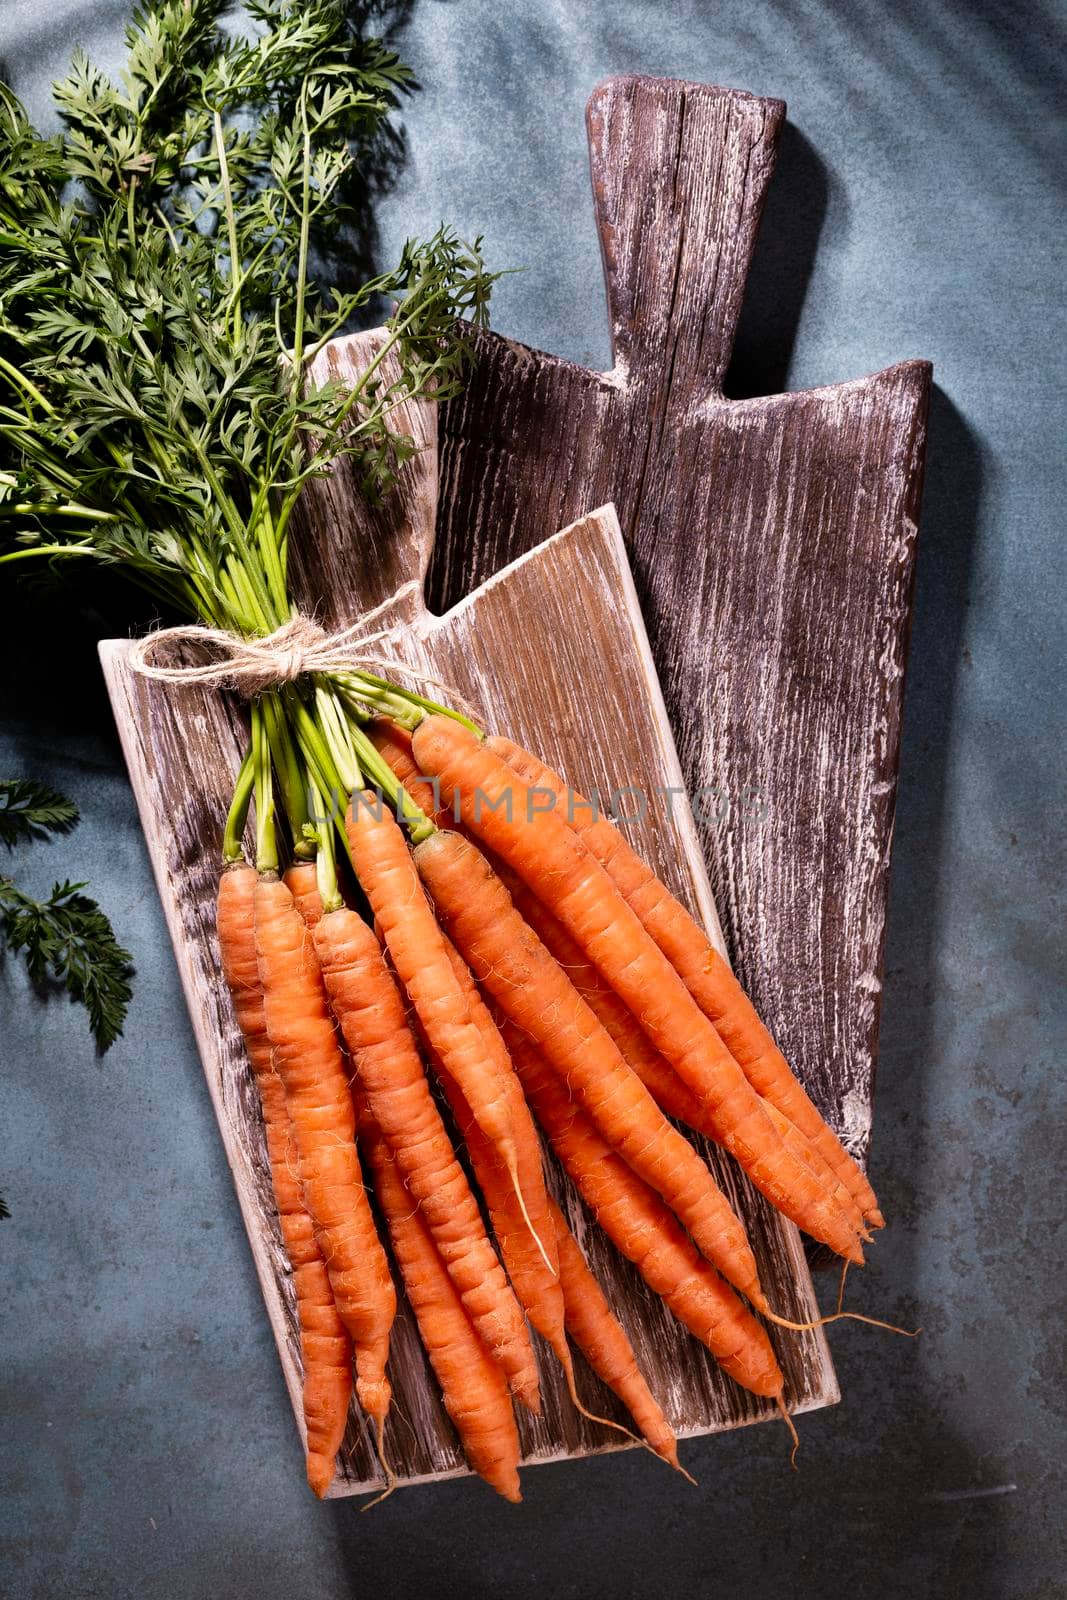 Organic carrot on wood cutting board, closeup photo.